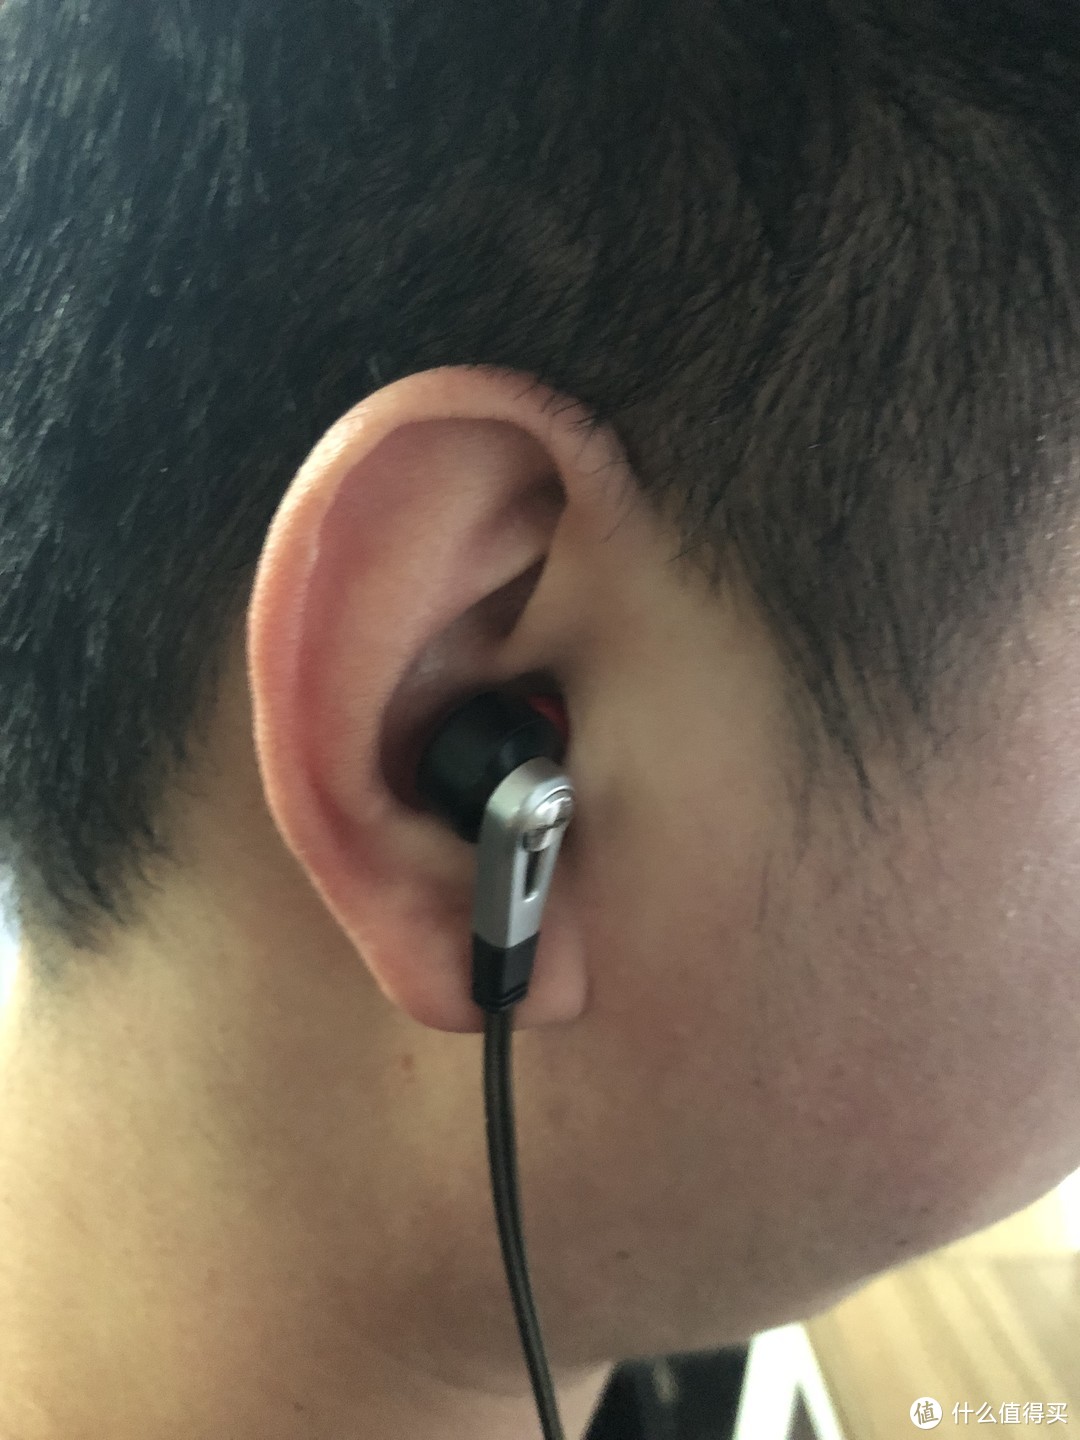 上大学的惊喜！人生第一副HIFI耳机—DENON 天龙 C820 耳机开箱